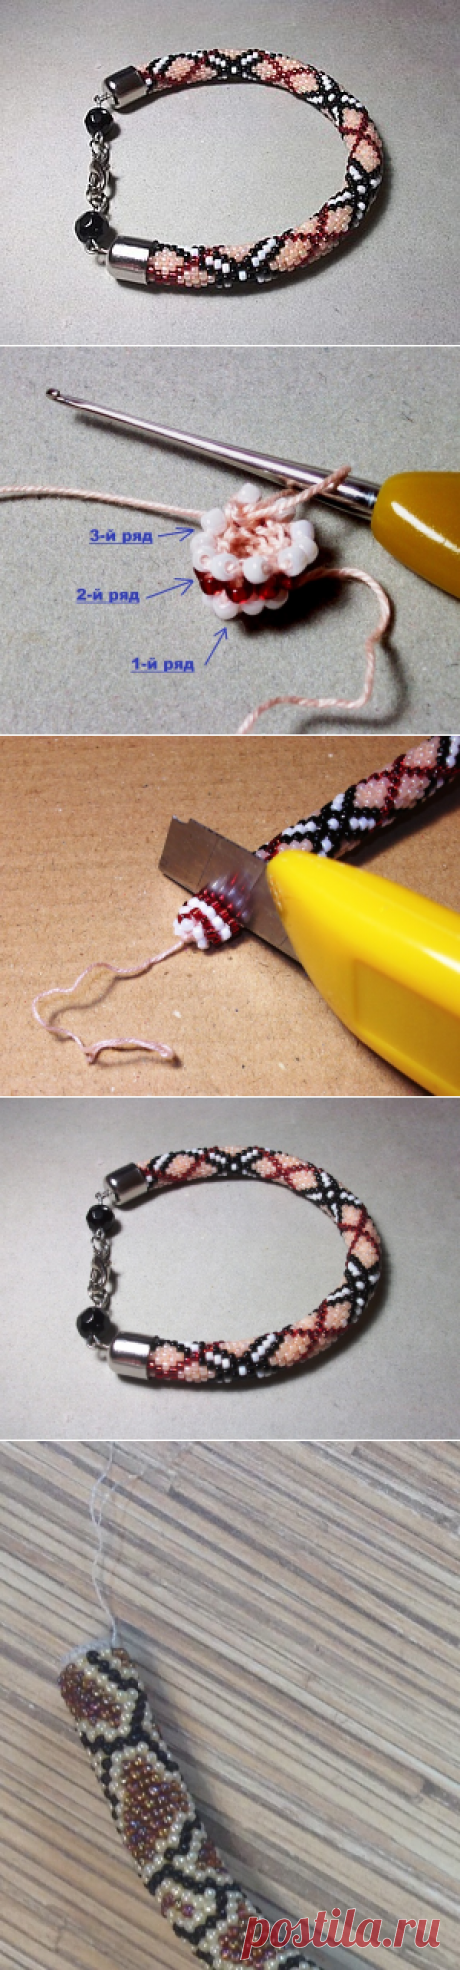 Как легко начать вязать бисерный жгут - Ярмарка Мастеров - ручная работа, handmade